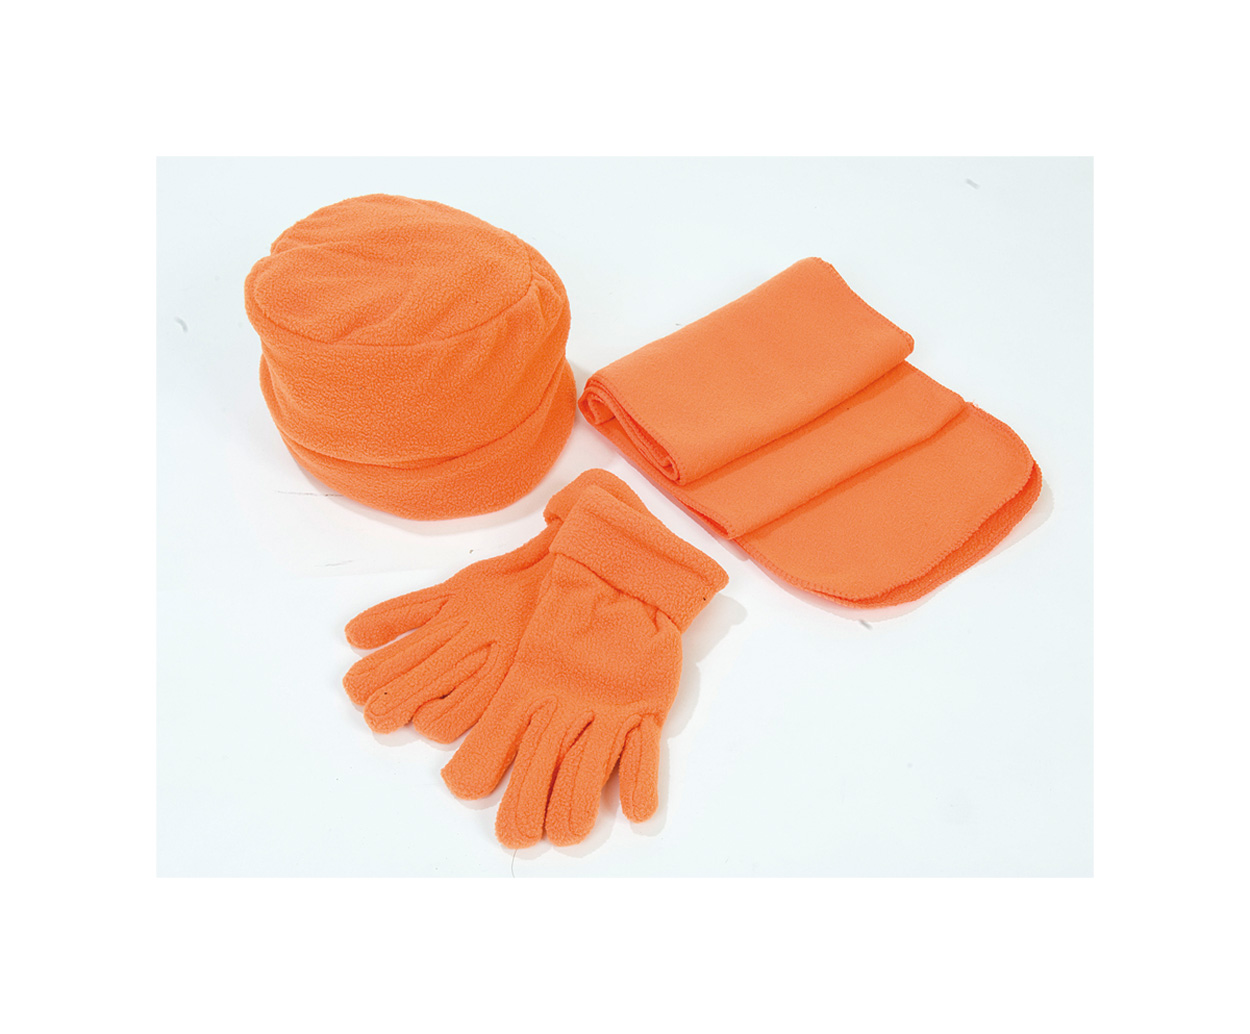 Promo  Glen kapa, šal rukavice - set, narančaste boje